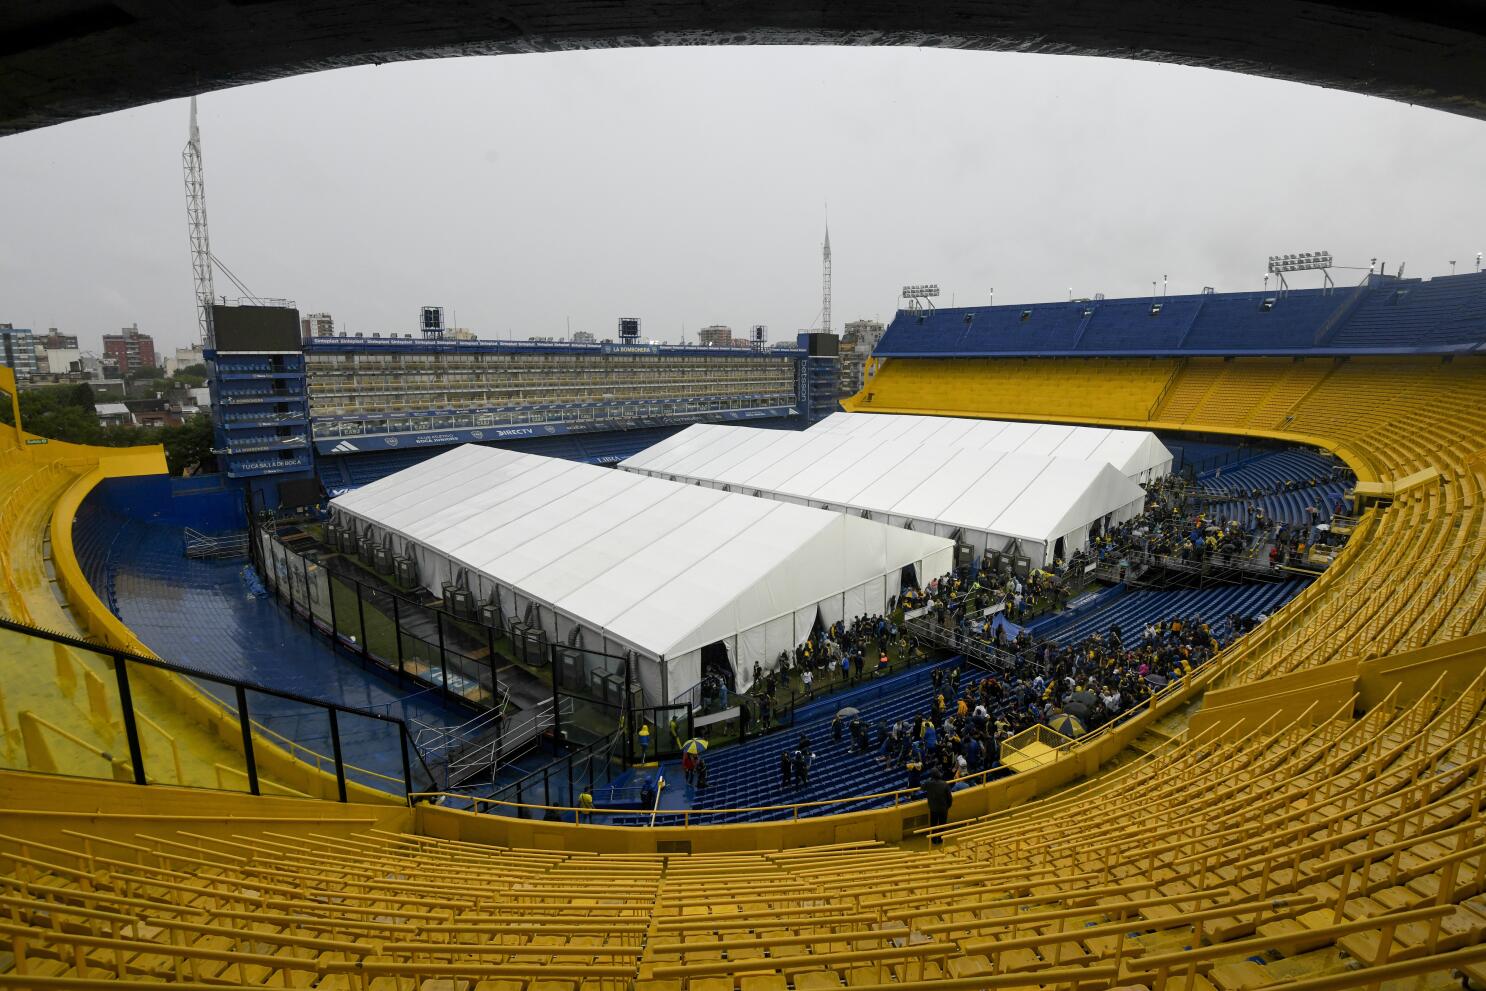 Juan Román Riquelme es electo como nuevo presidente de Boca Juniors - La  Tercera